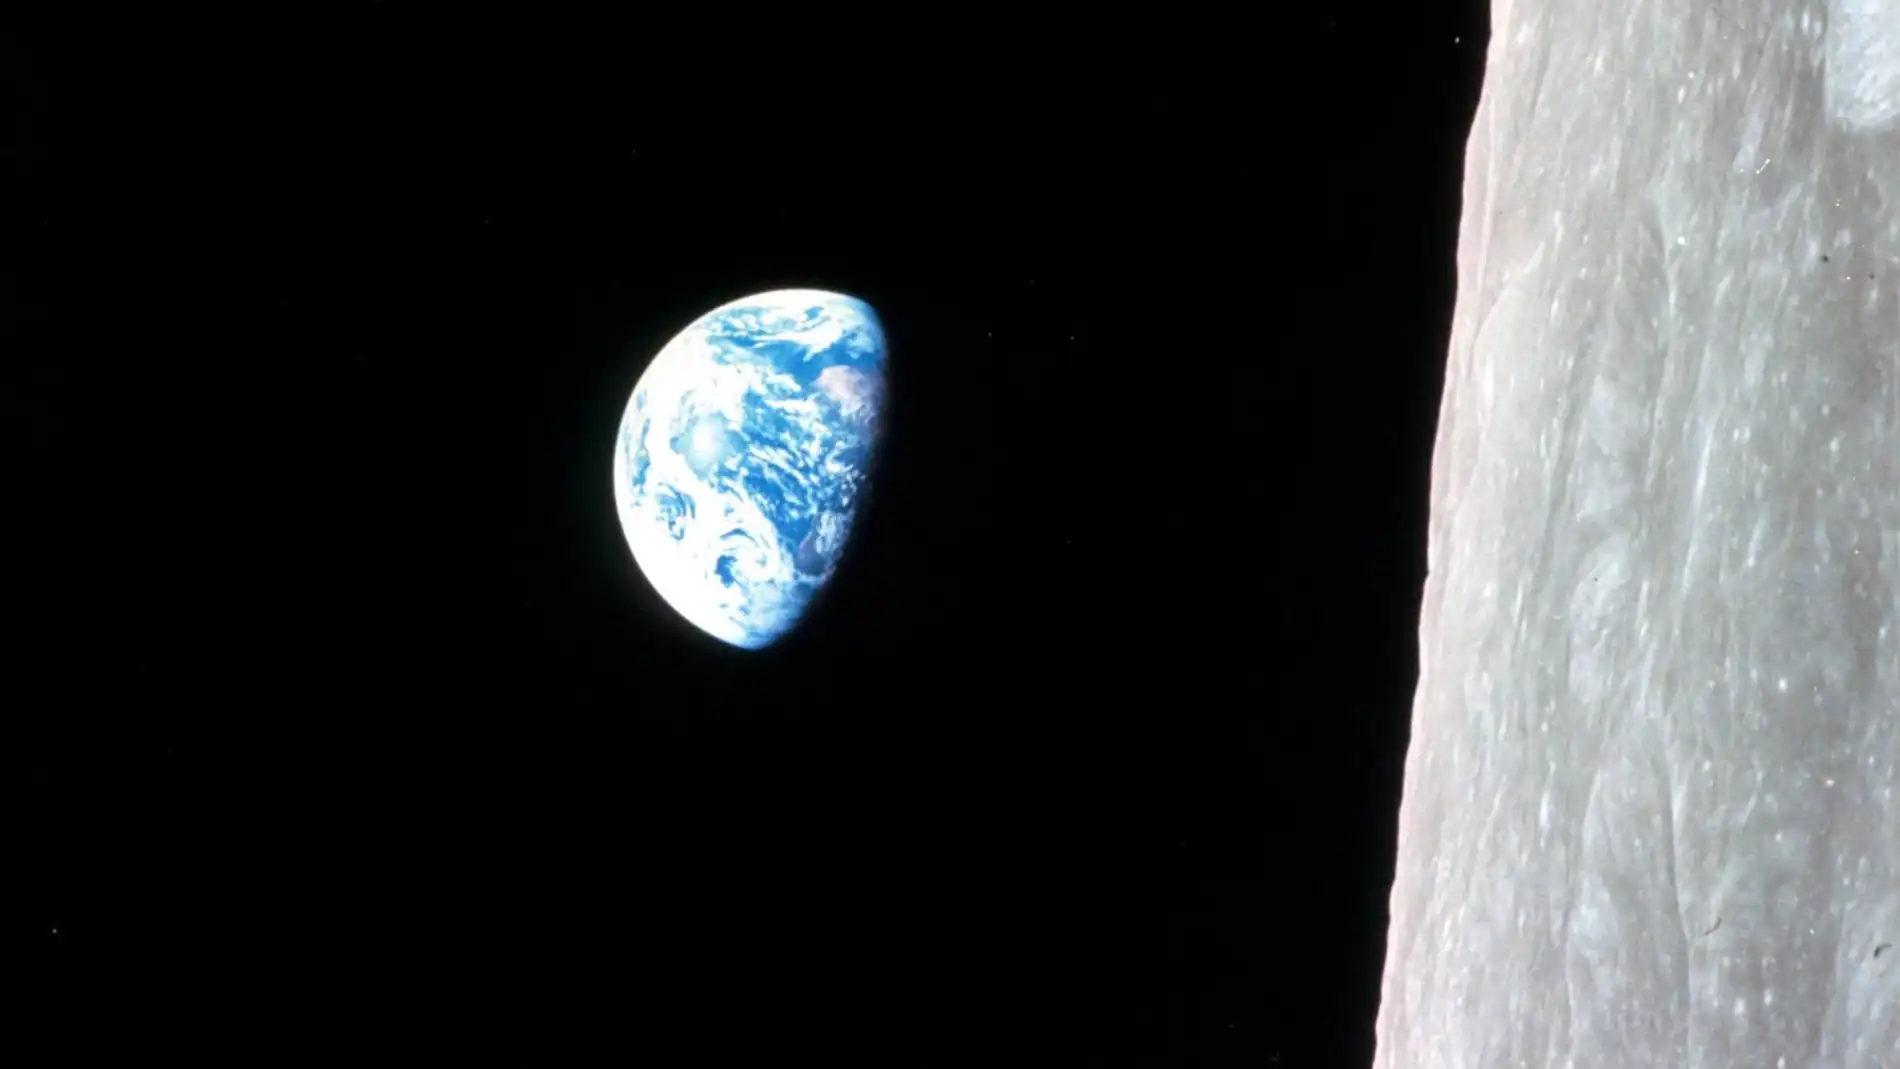 Vista de la Tierra capturada por las cámaras de la misión Apollo 8 en diciembre de 1968 